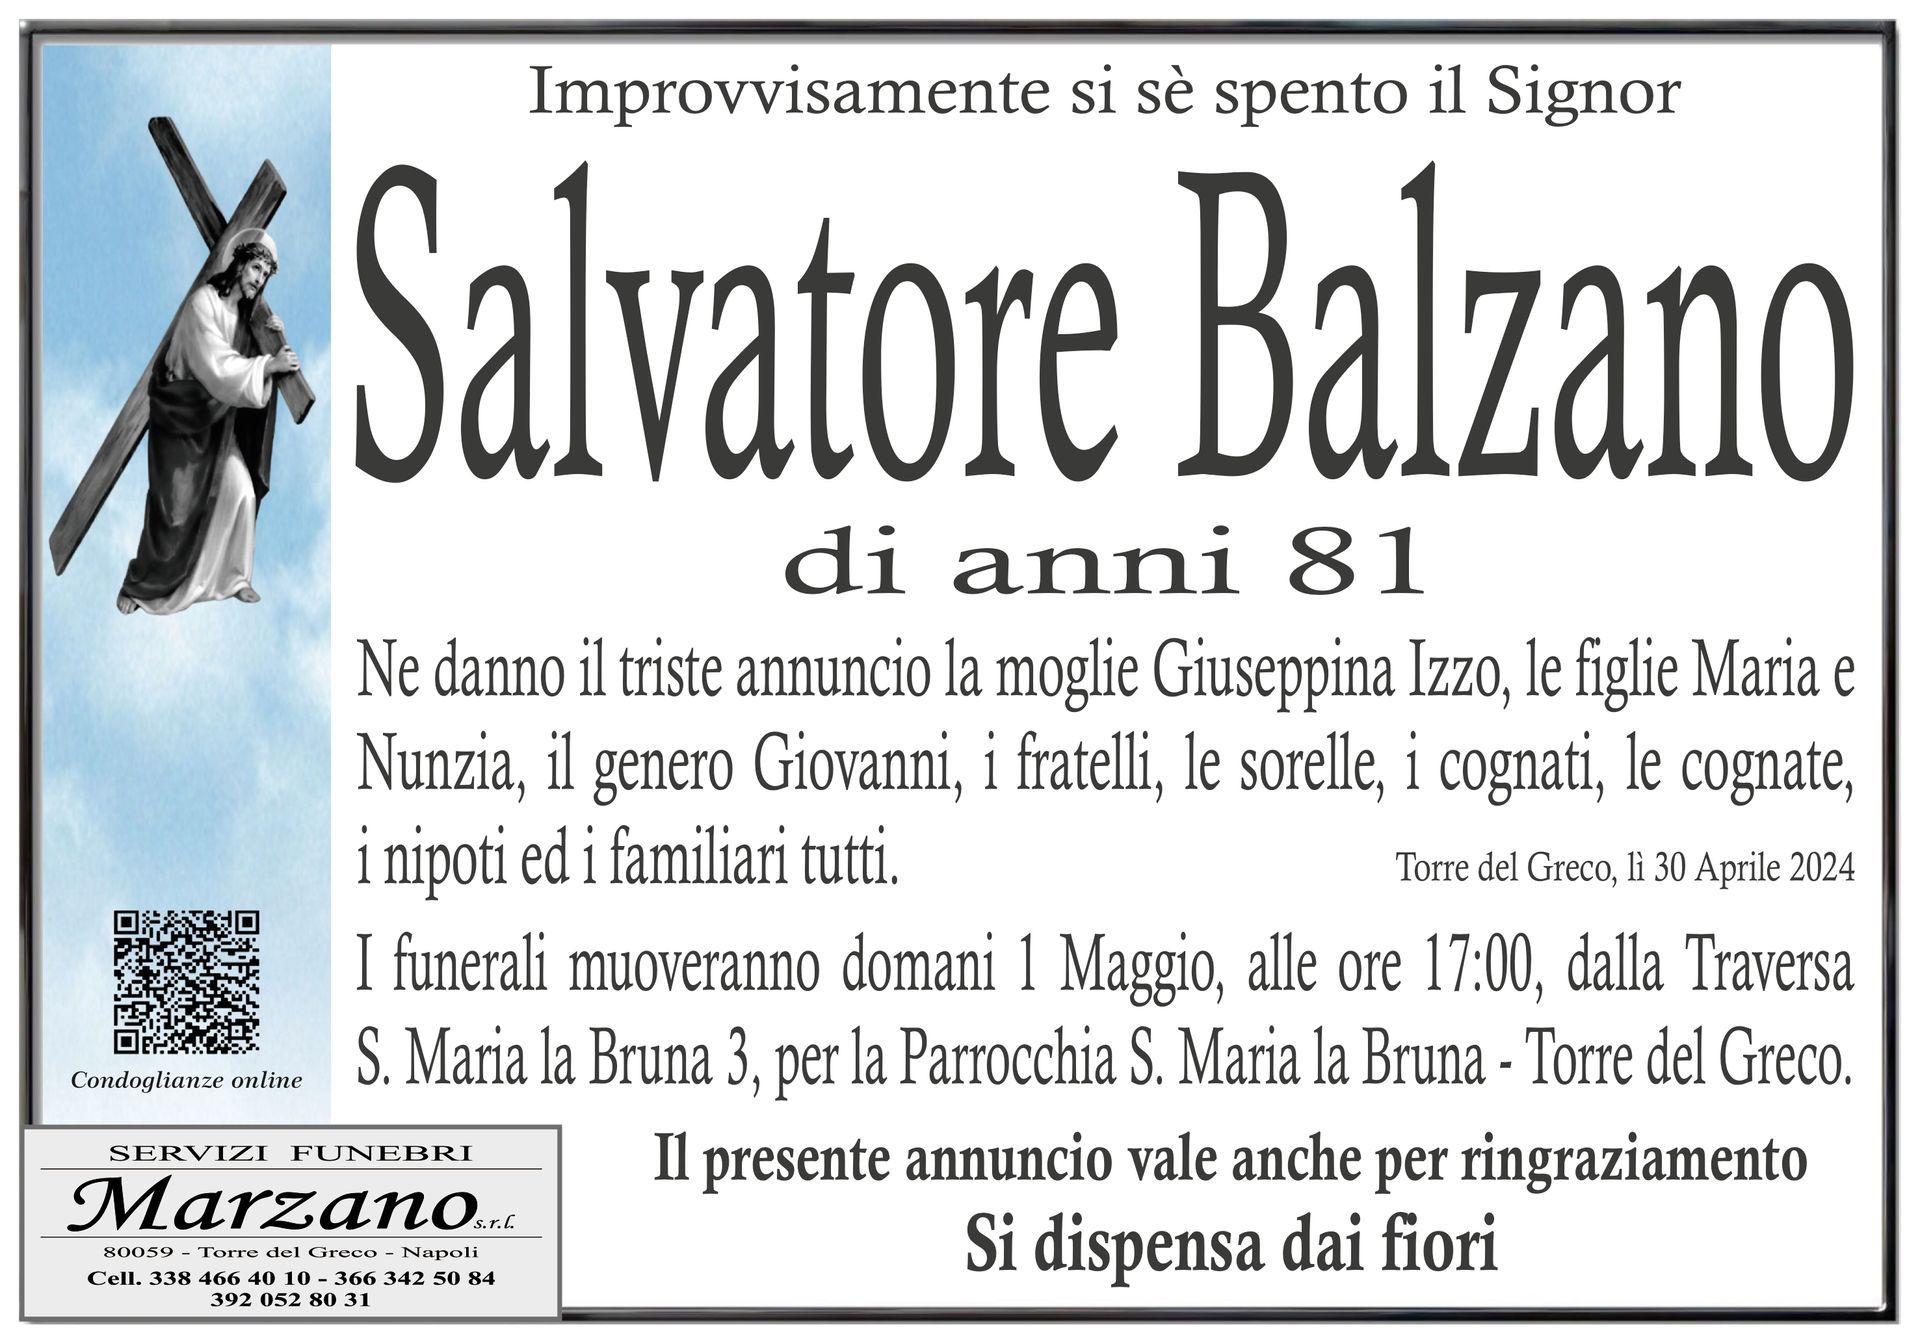 Salvatore Balzano